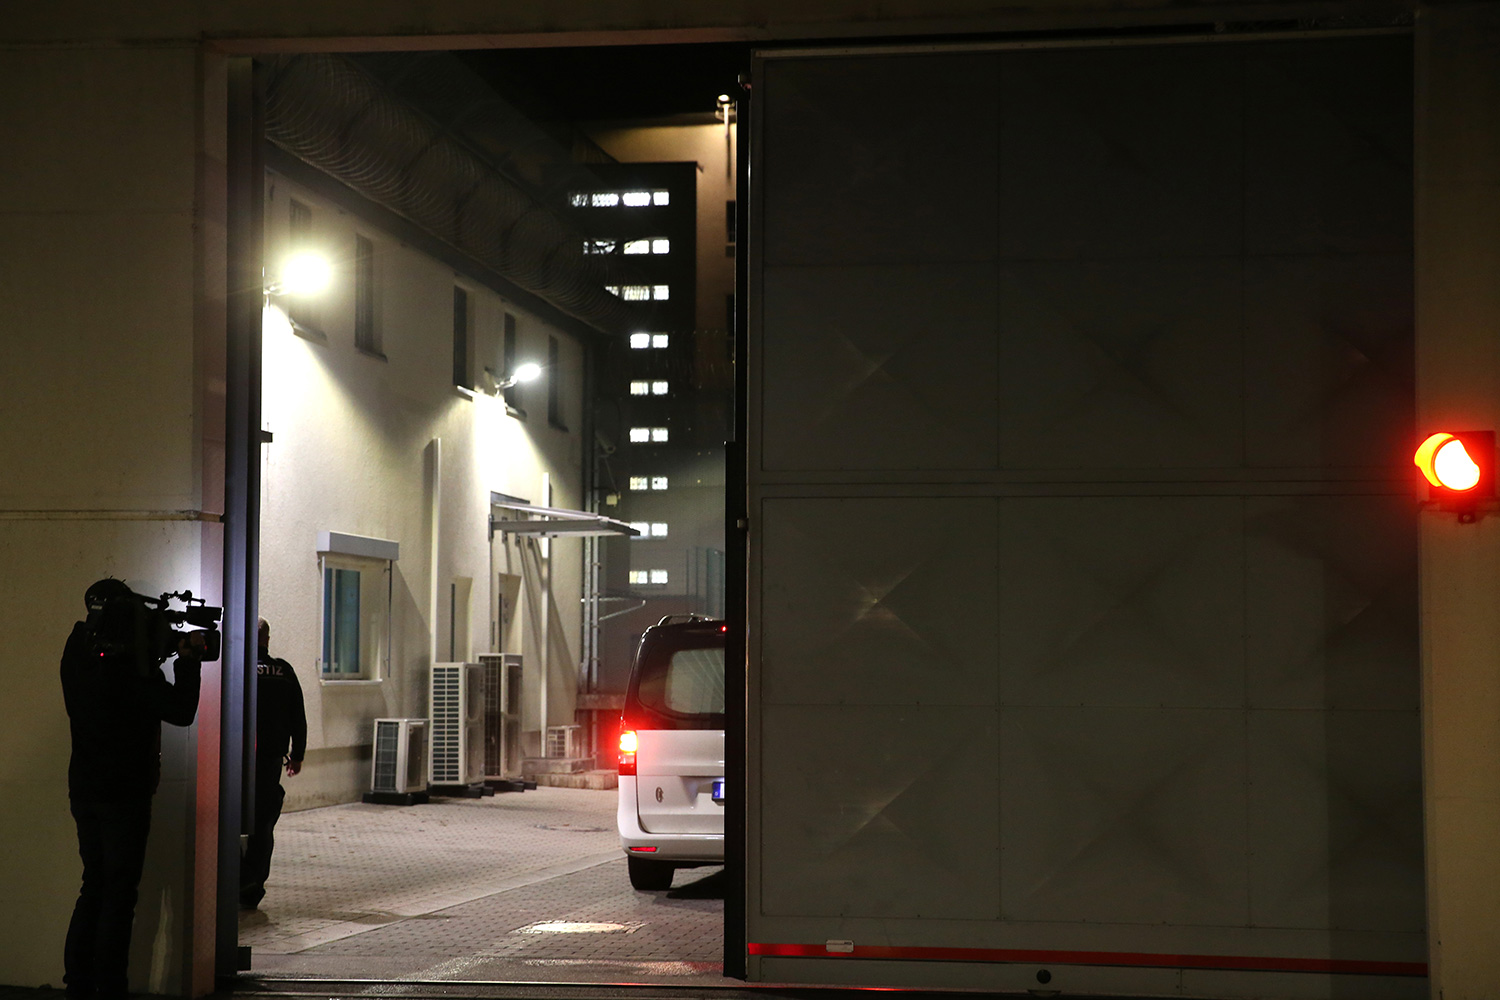 El presunto yihadista detenido en Alemania se suicida en su celda